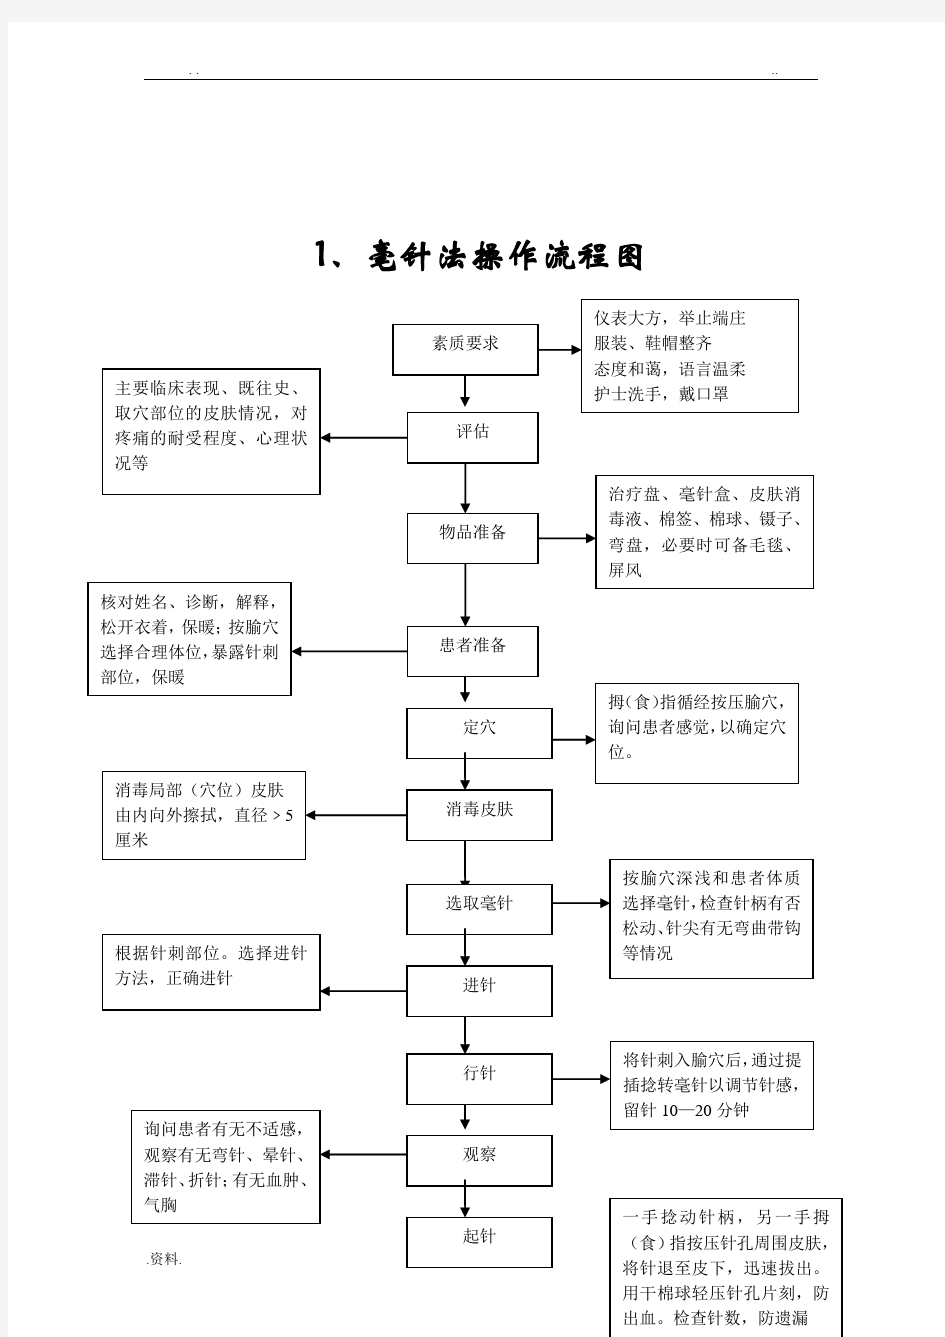 中医操作流程图